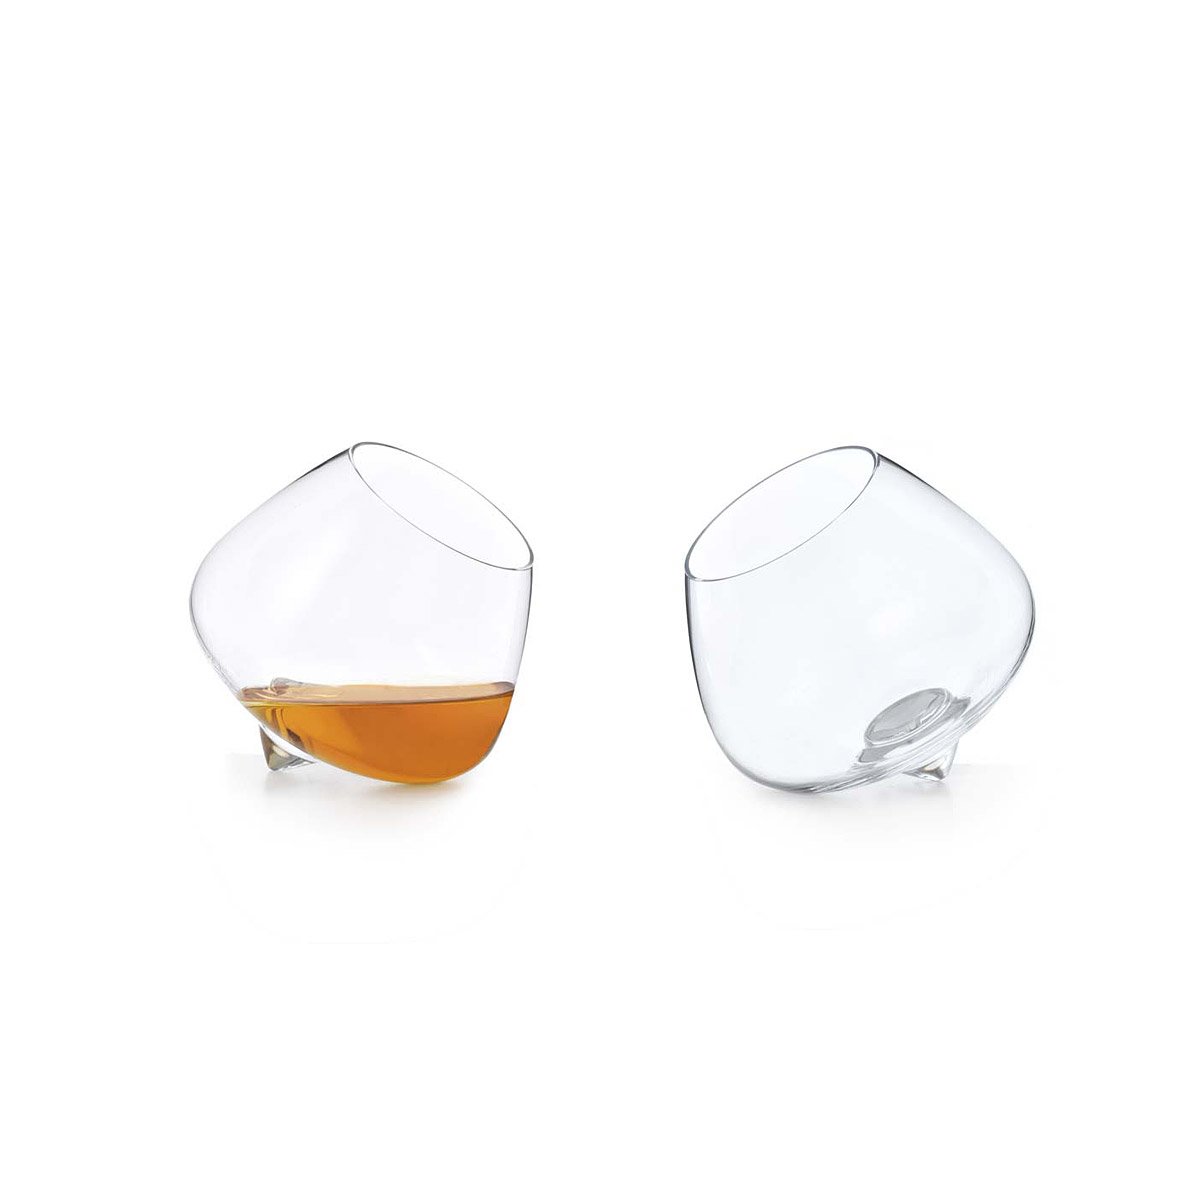 Cognac Glasses - Set of 2 | Wobble Cognac Glasses, Rocking | UncommonGoods